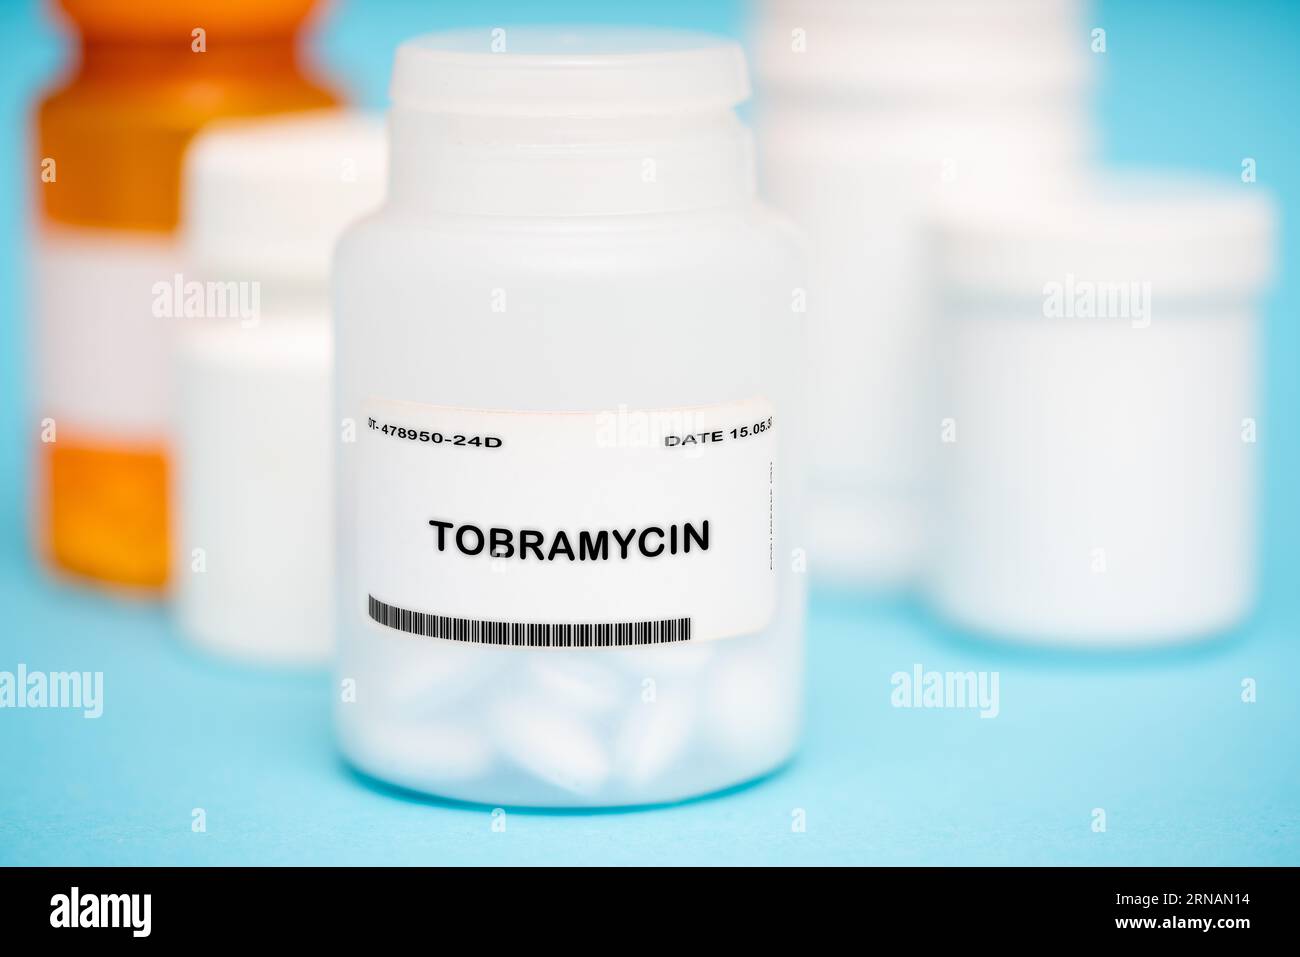 Der Wirkstoff in Tobramycin ist Tobramycin, ein Antibiotikum, das zur Behandlung verschiedener bakterieller Infektionen, insbesondere derjenigen, die das lu betreffen, angewendet wird Stockfoto